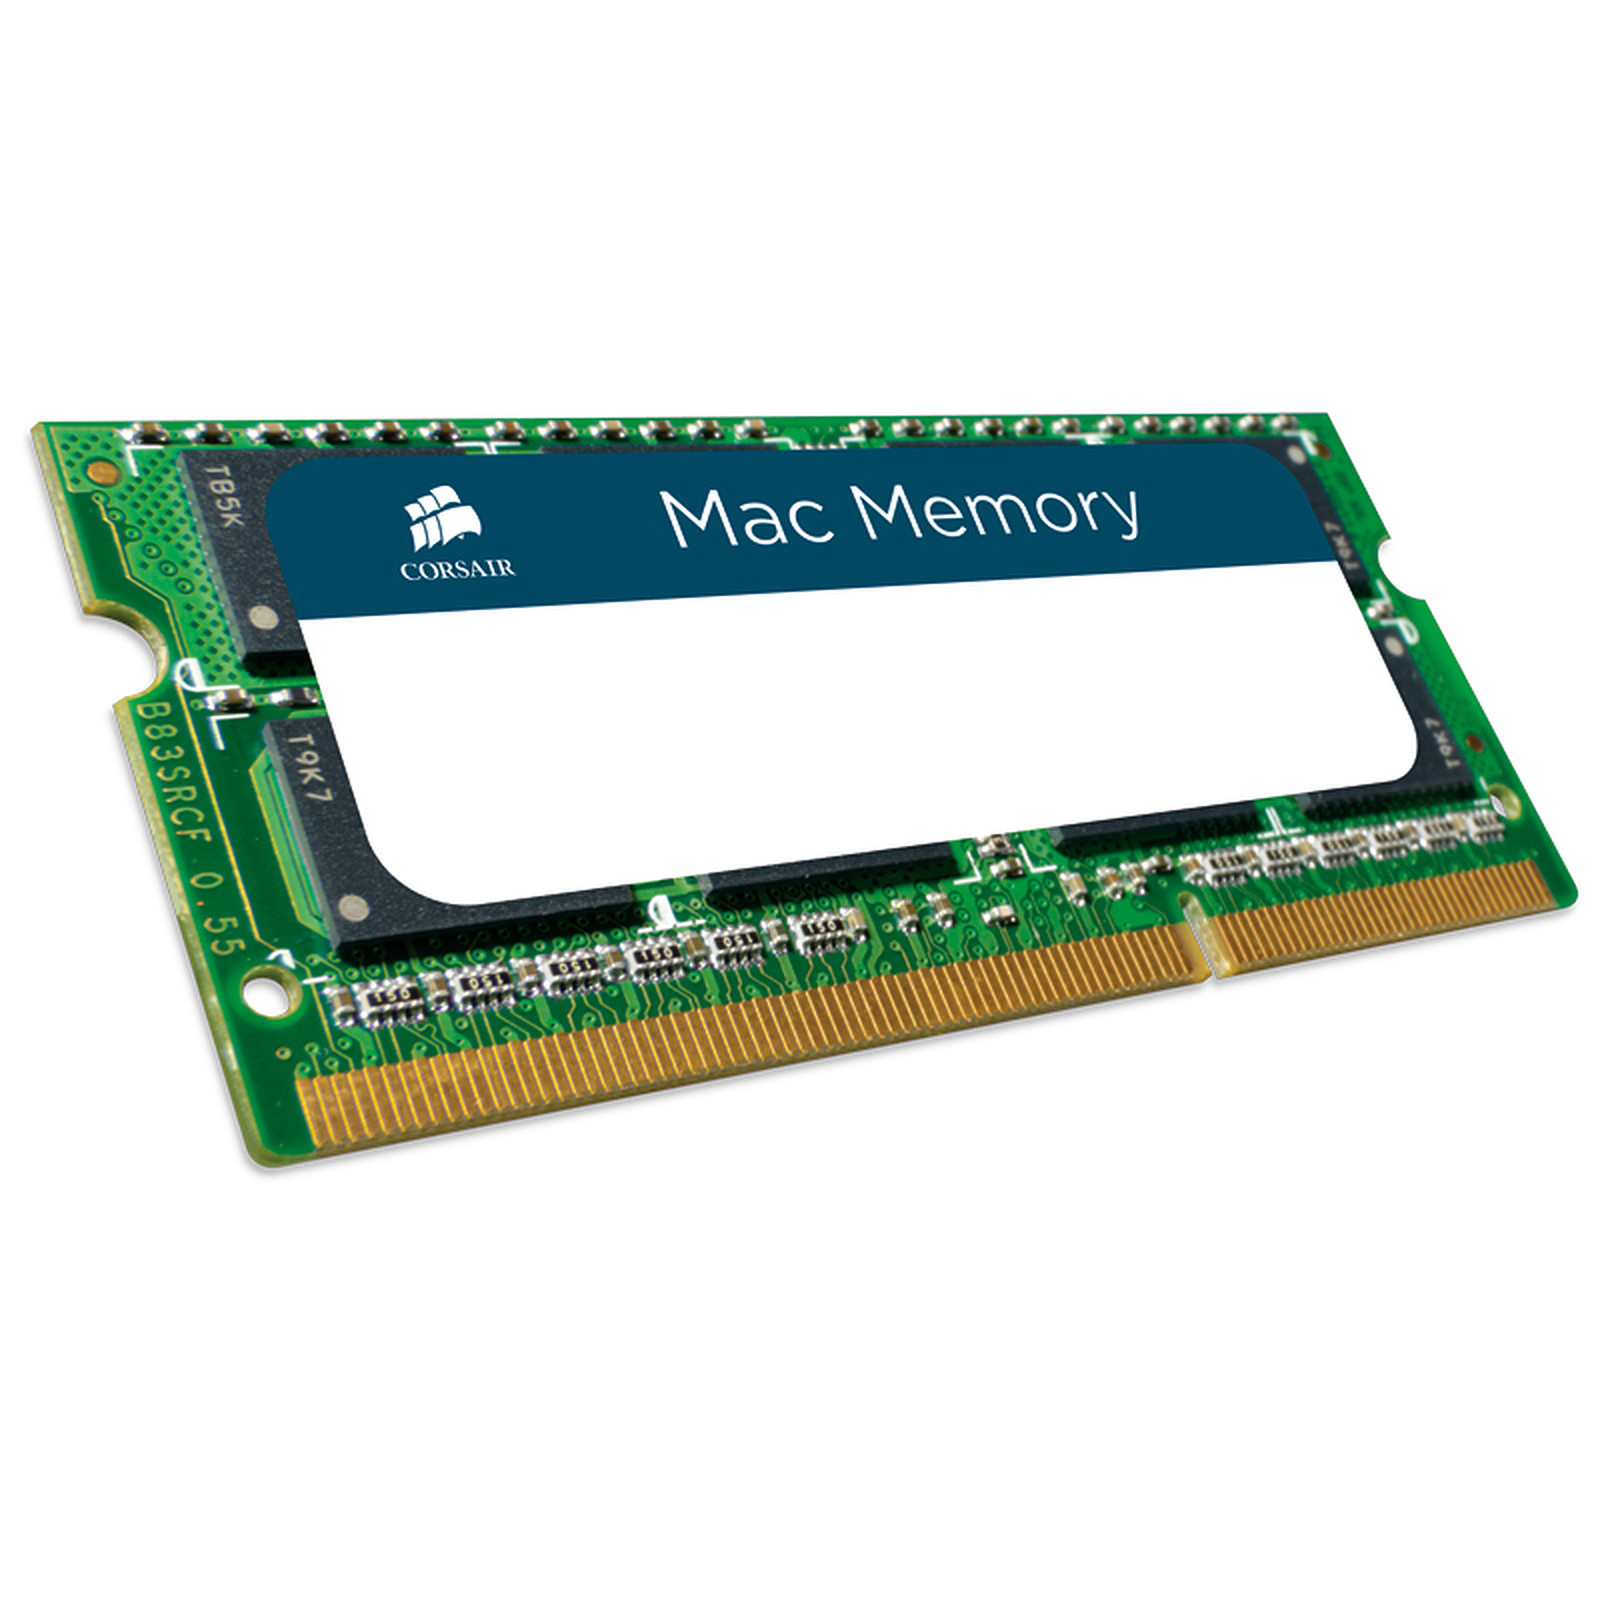 Corsair Mac Memory SO-DIMM 8 Go DDR3 1333 MHz CL9 - Memoire PC Corsair